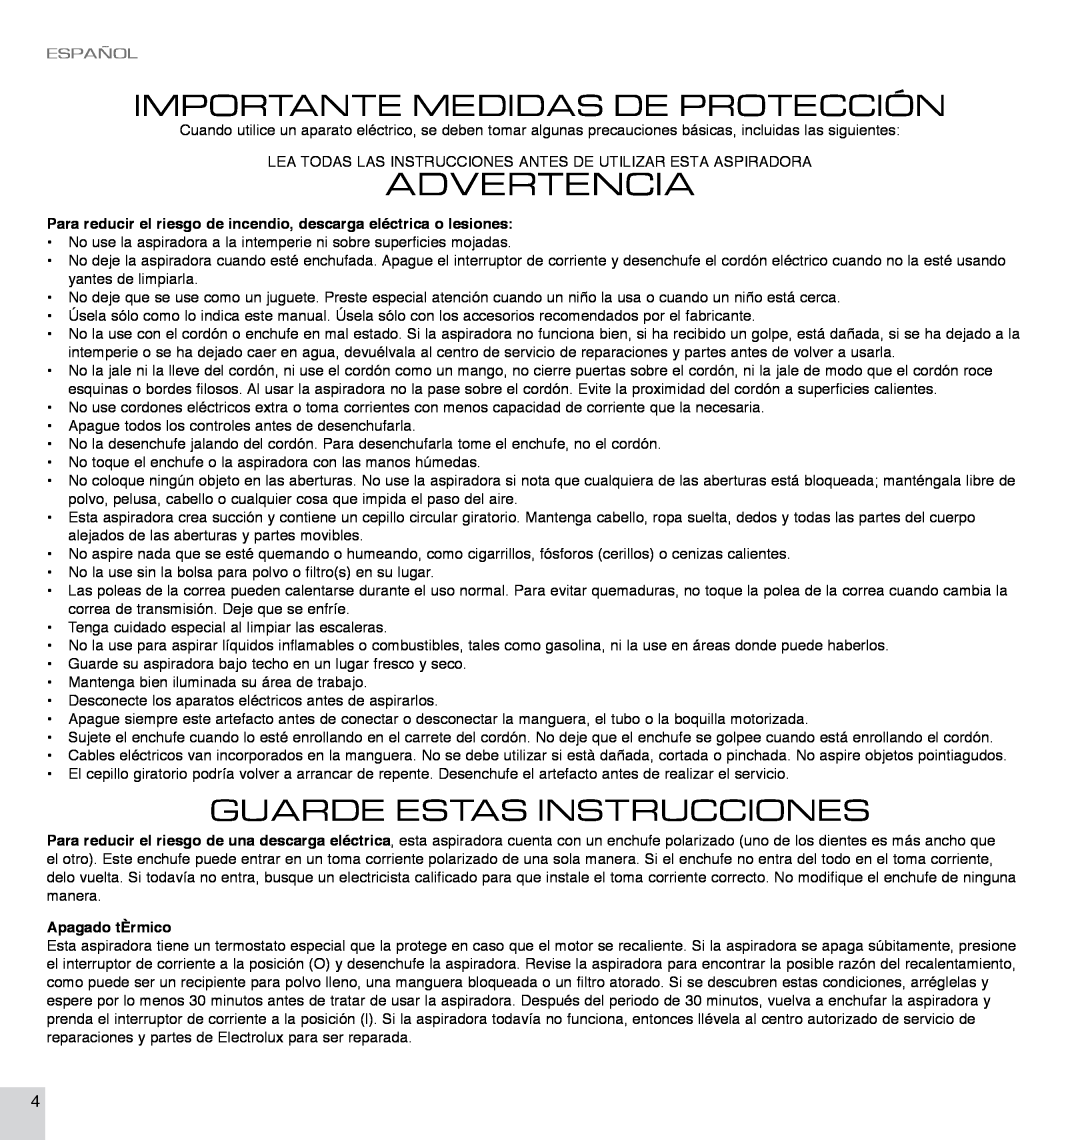 Electrolux EL7063A Advertencia, Importante Medidas De Protección, Guarde Estas Instrucciones, Español, Apagado tÈrmico 